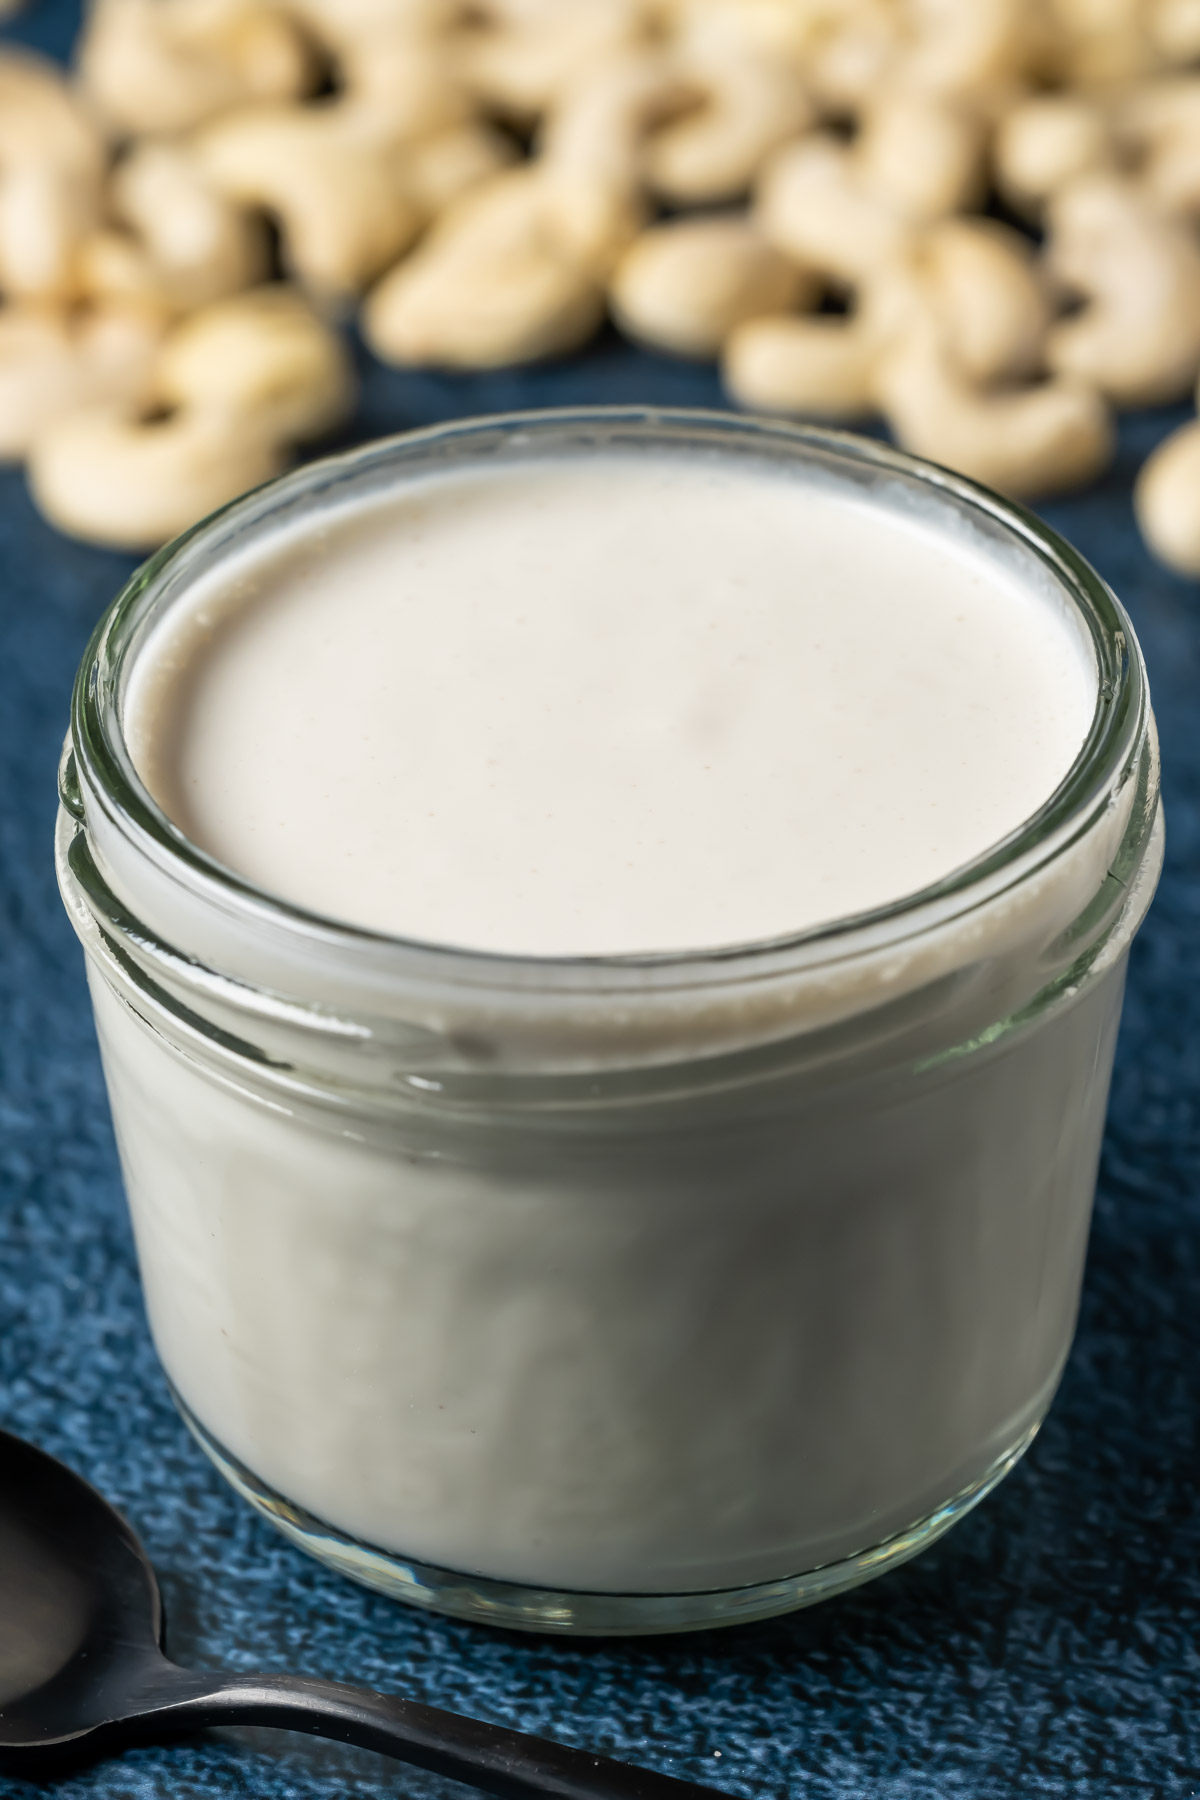 Vegan heavy cream substitute in a glass jar.